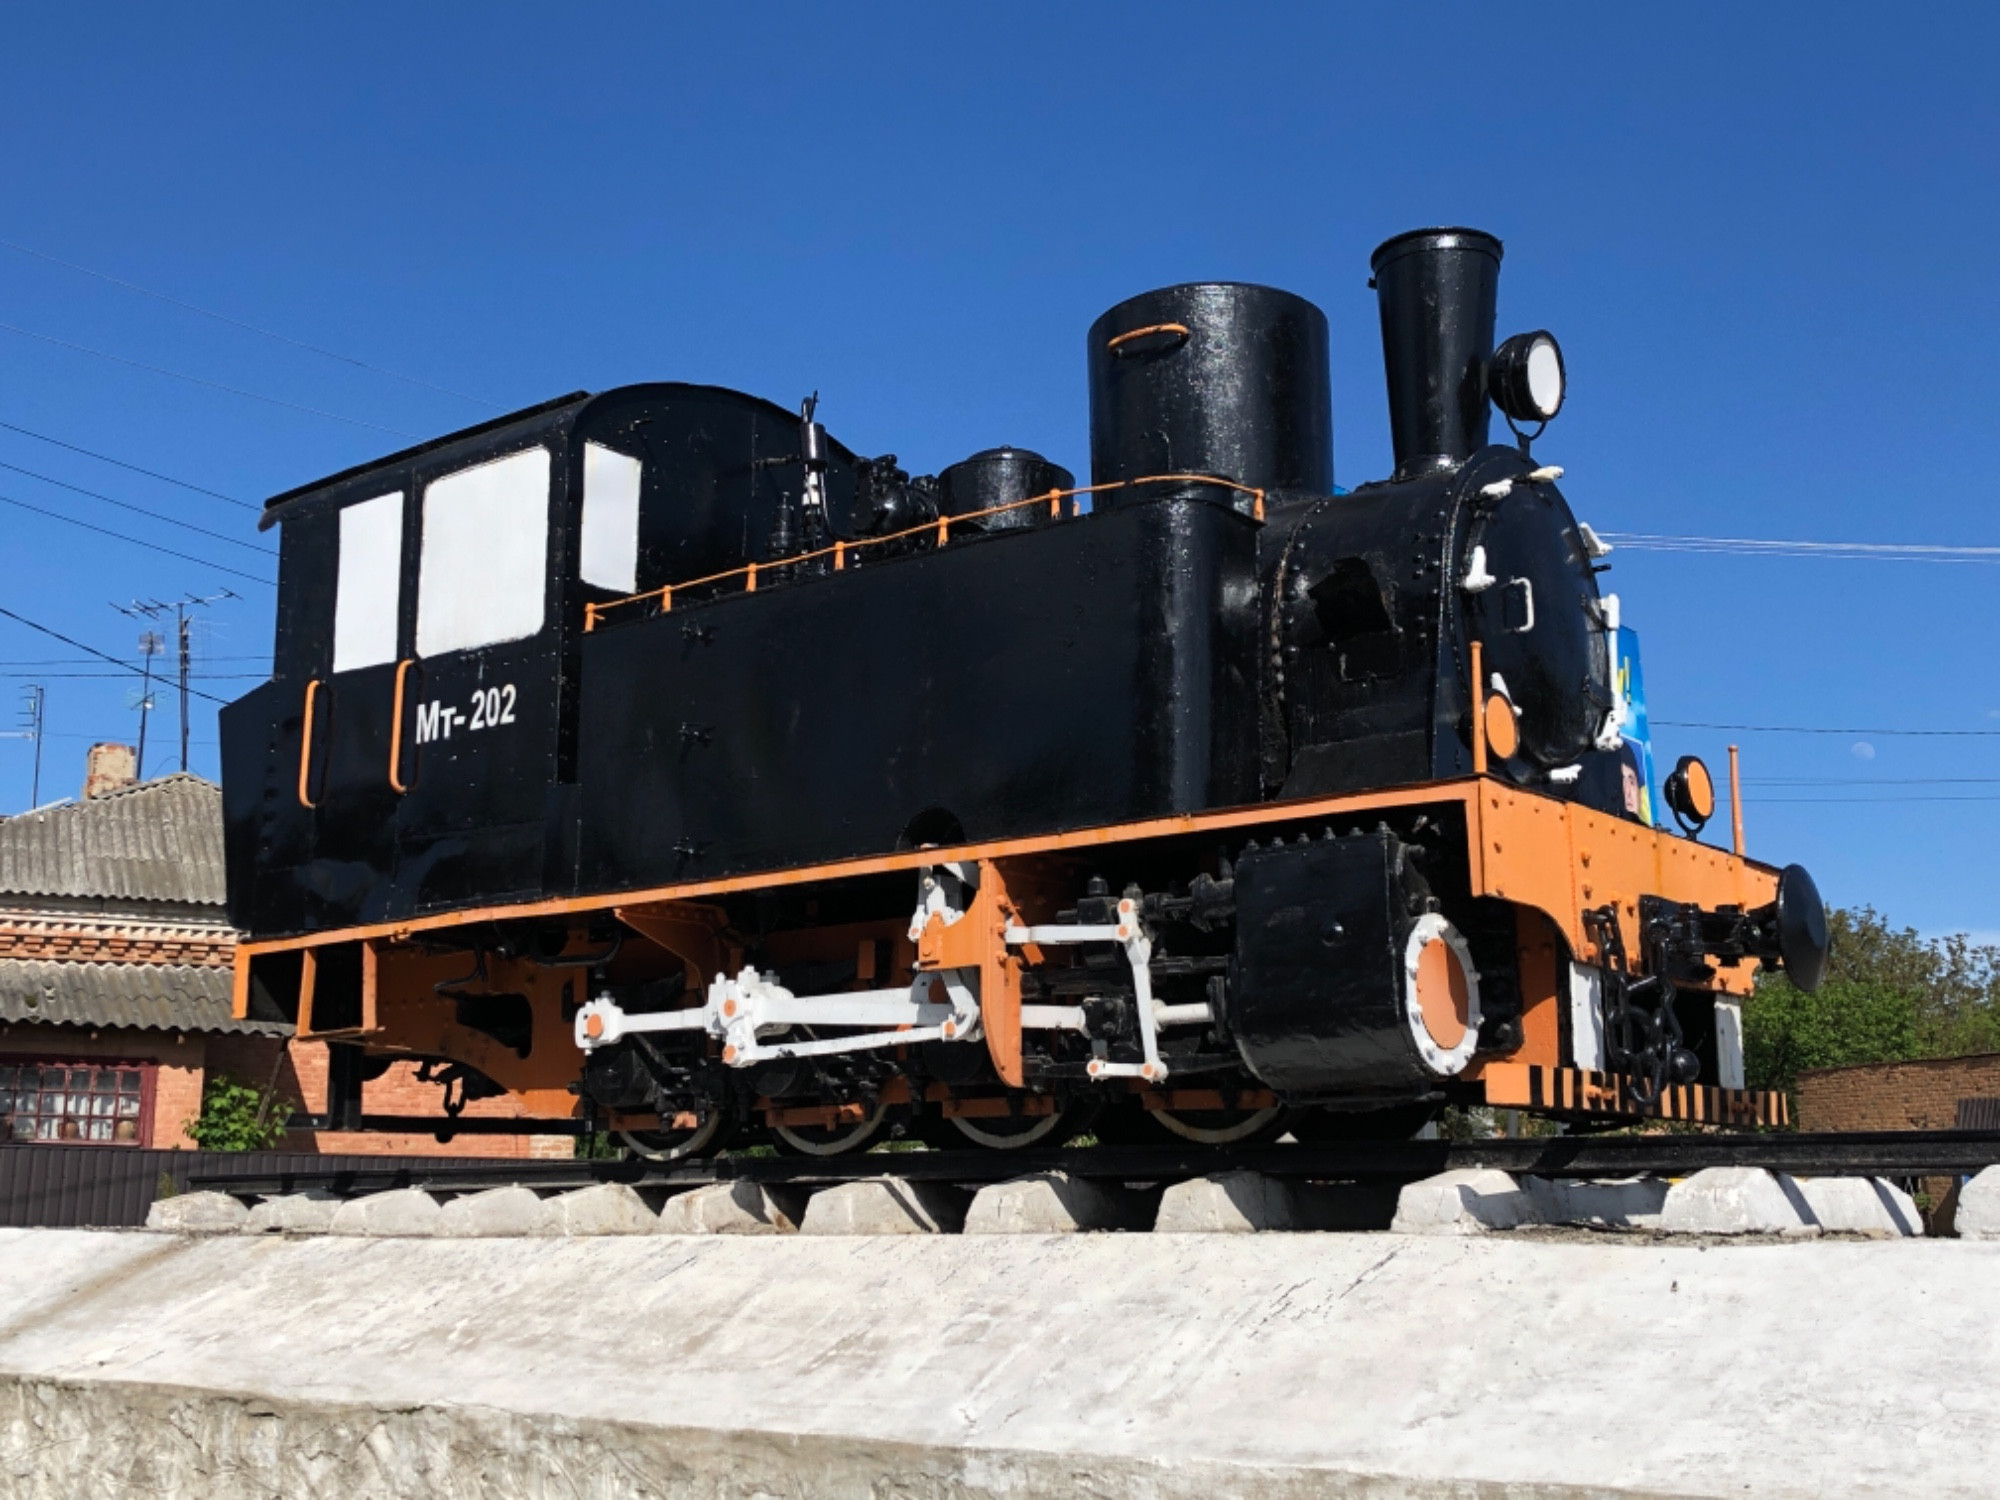 Узкоколейный Паровоз — МТ 202, построен в 1895 году на заводе Св. Леонарда по закажу Эстонского железнодорожного департамента. Поставлен на постамент в 1984.